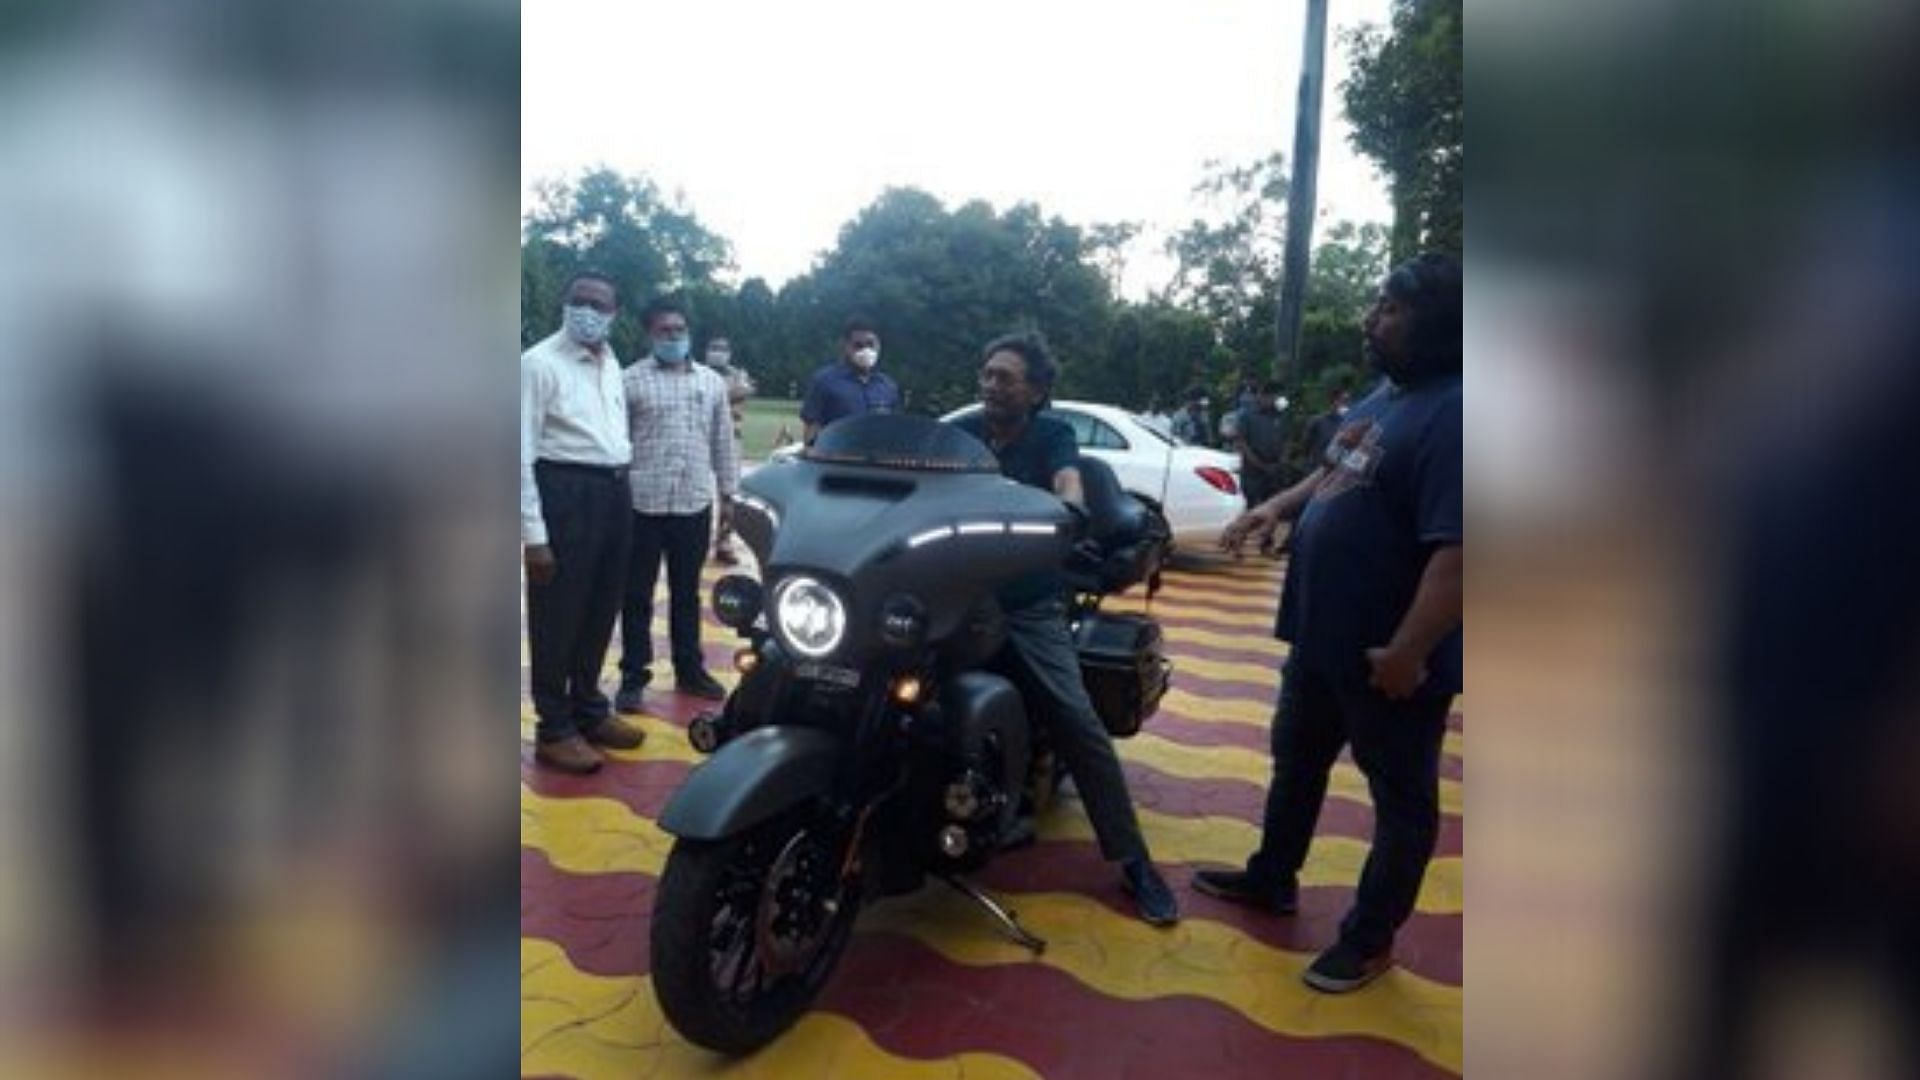 Chief Justice of India SA Bobde on a Harley Davidson bike